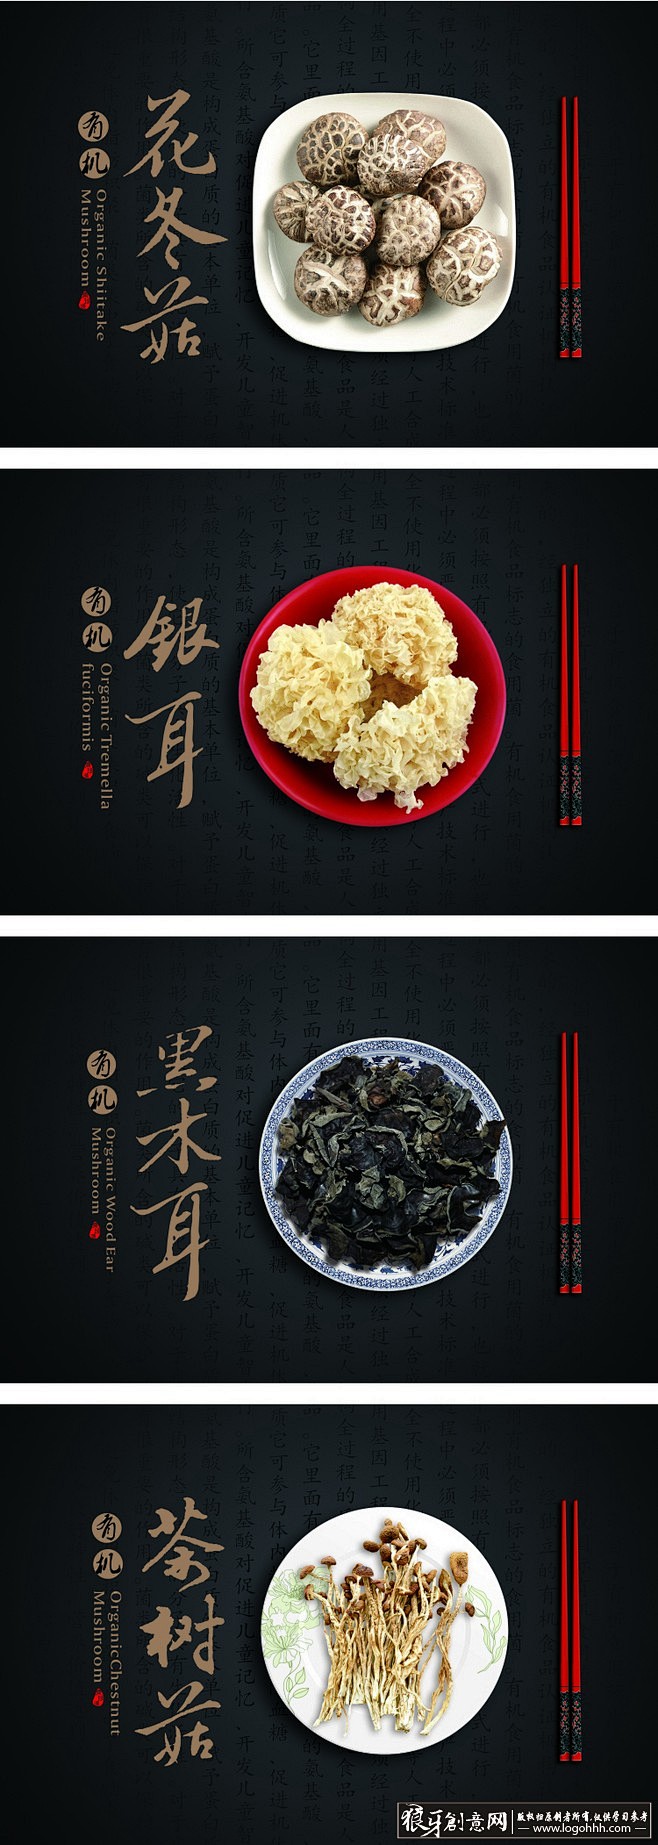 中国风 食品画册排版 中国风创意灵感 古...